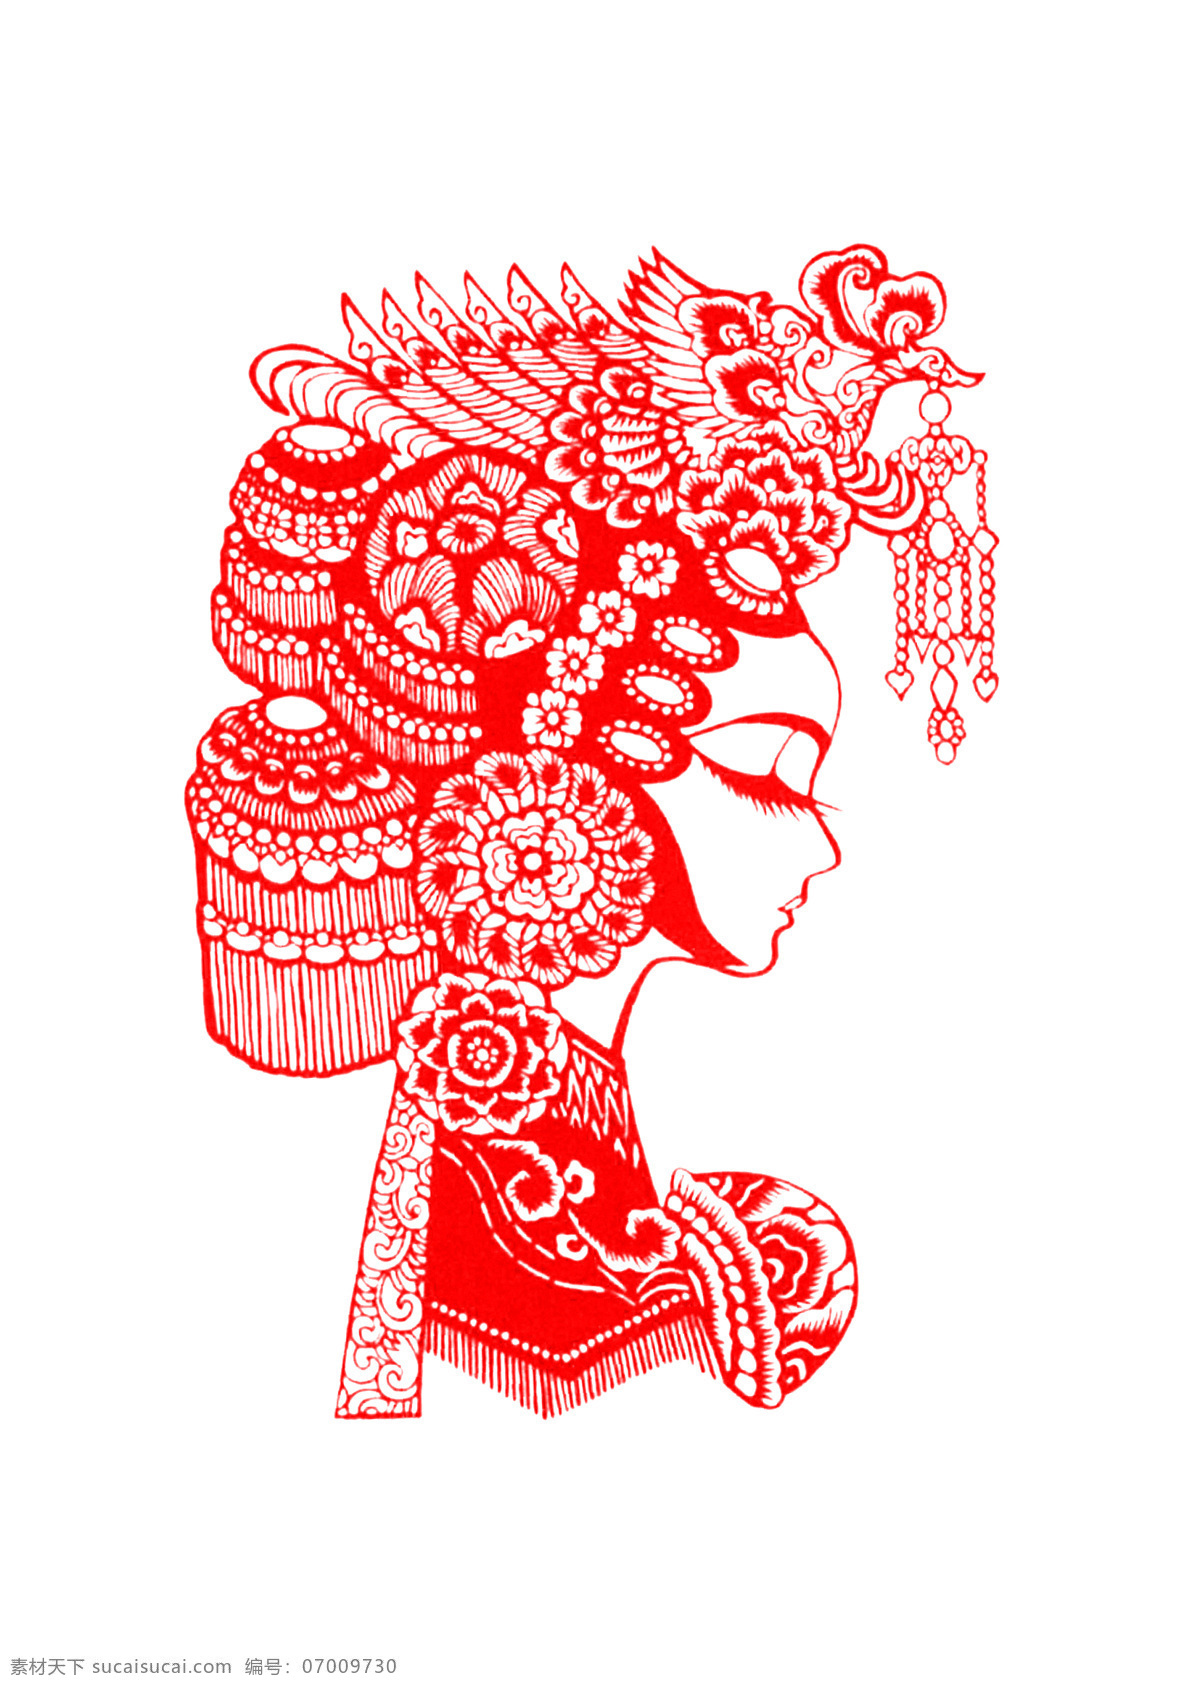 脸谱剪纸 美女 图案 剪纸 脸谱 传统 传统文化 文化艺术